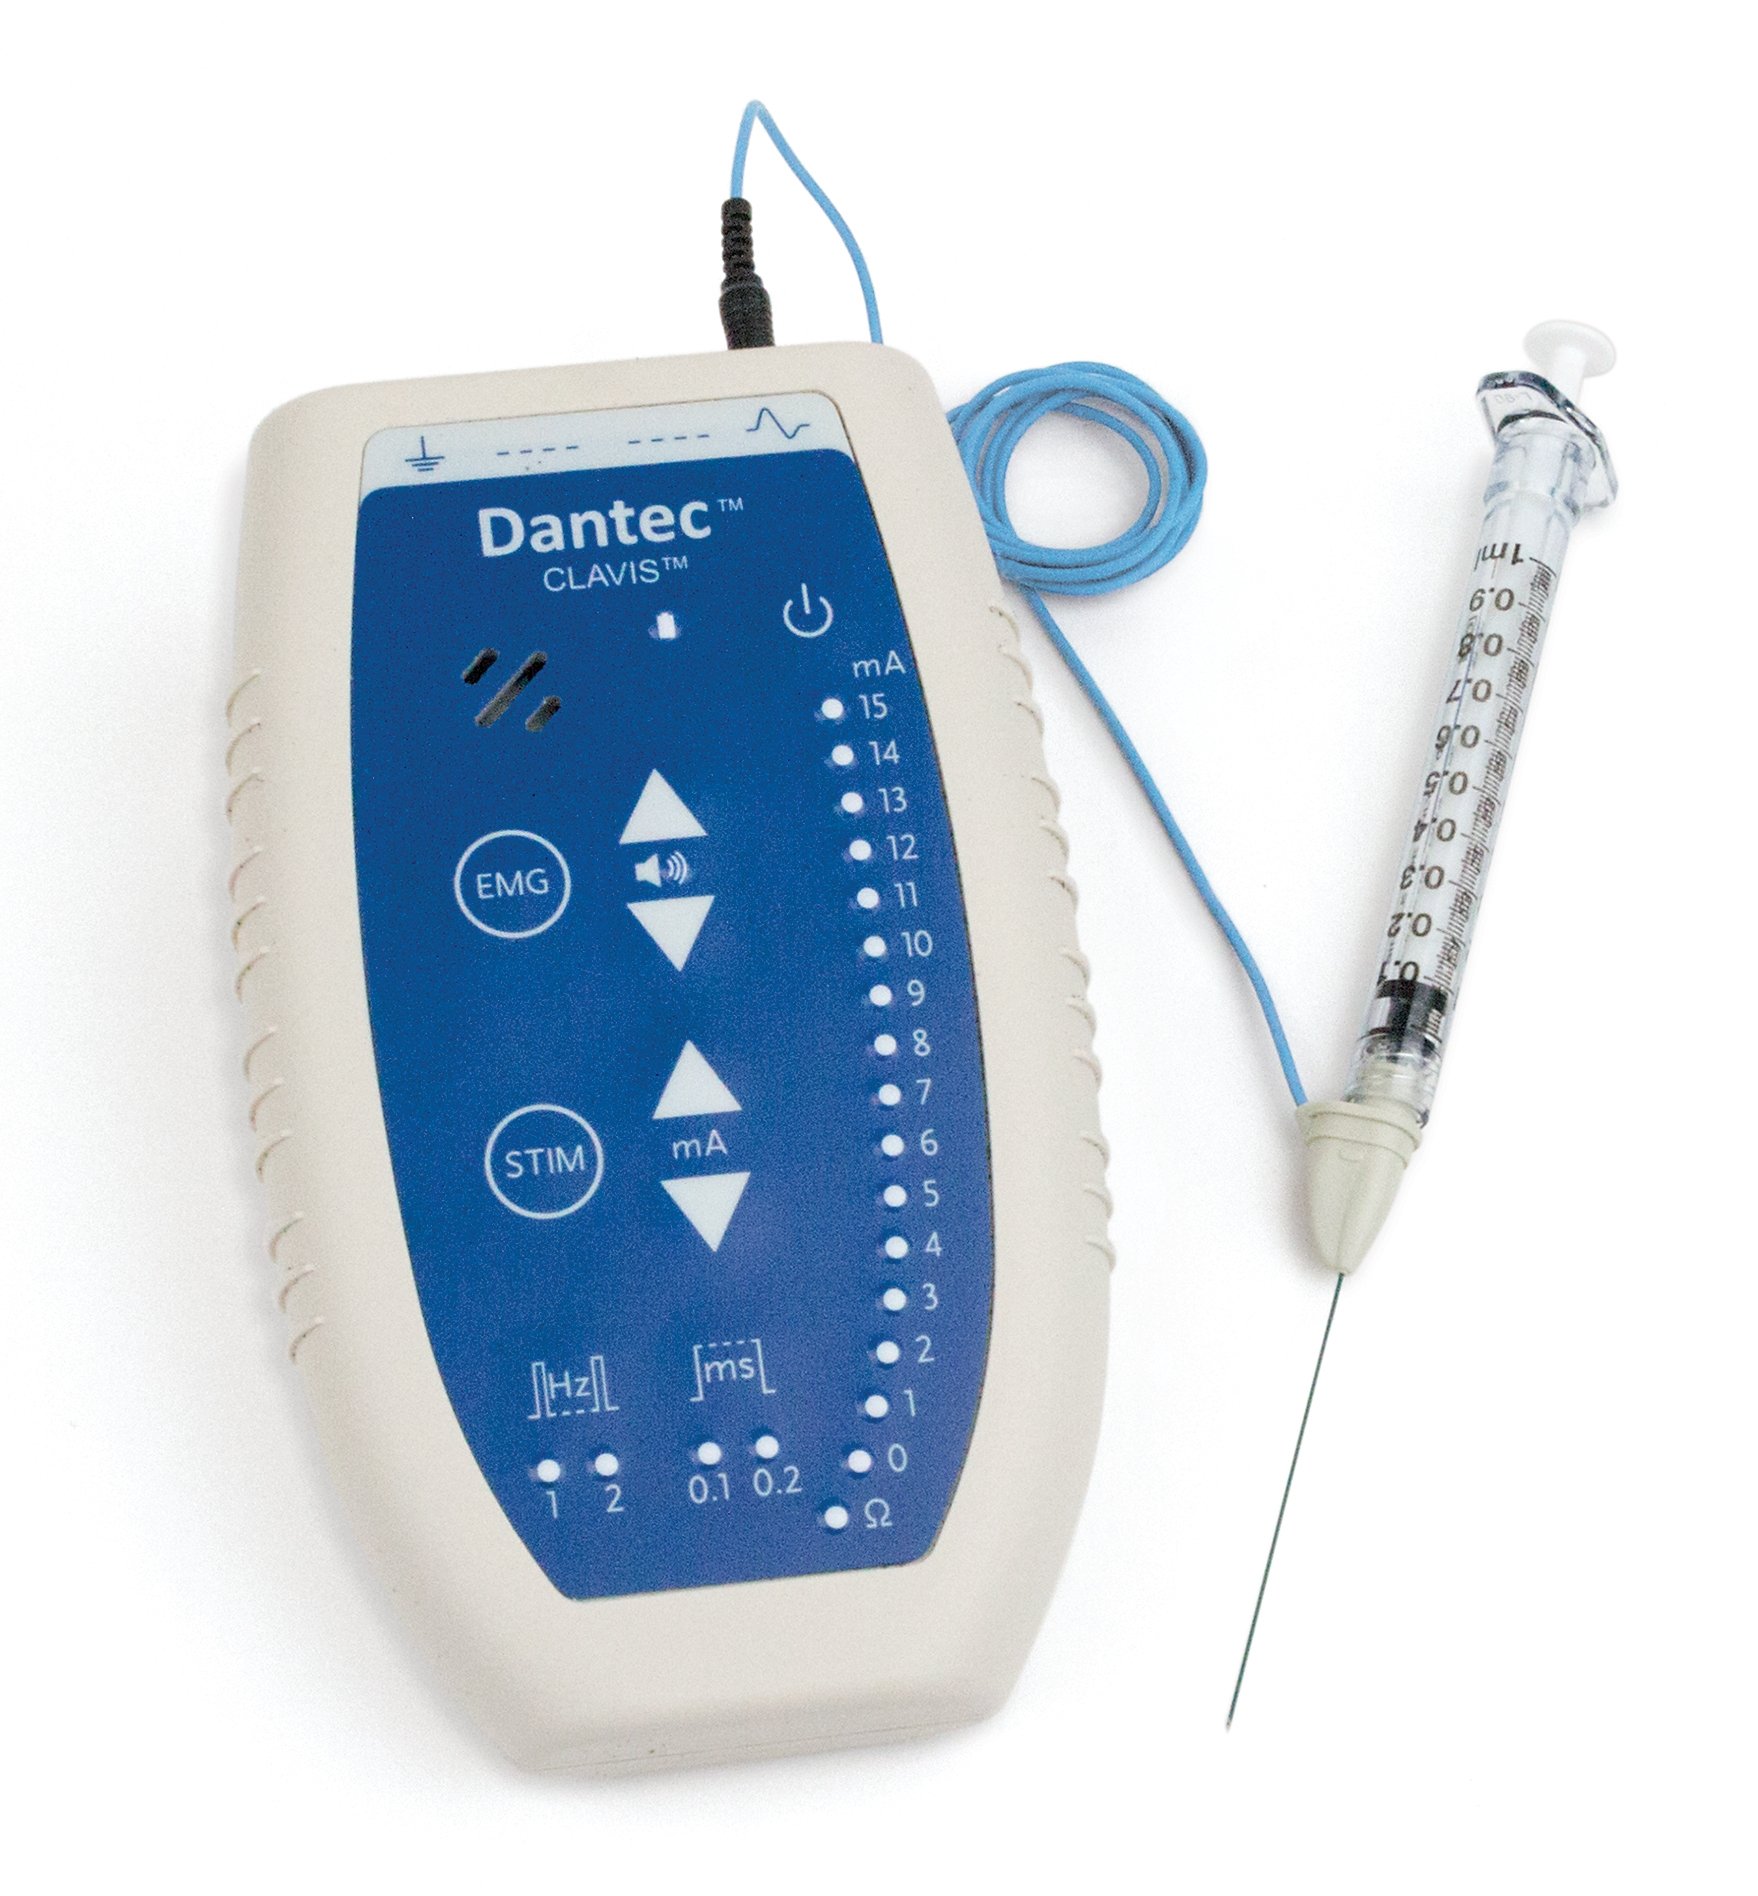 Det viste EMG-apparat er en lille mobil enhed, der kobles til kanylen, når man skal give medicin i musklen. Med nålespidsen kan man måle aktiviteten i musklen, så medicinen placeres det rigtige sted.